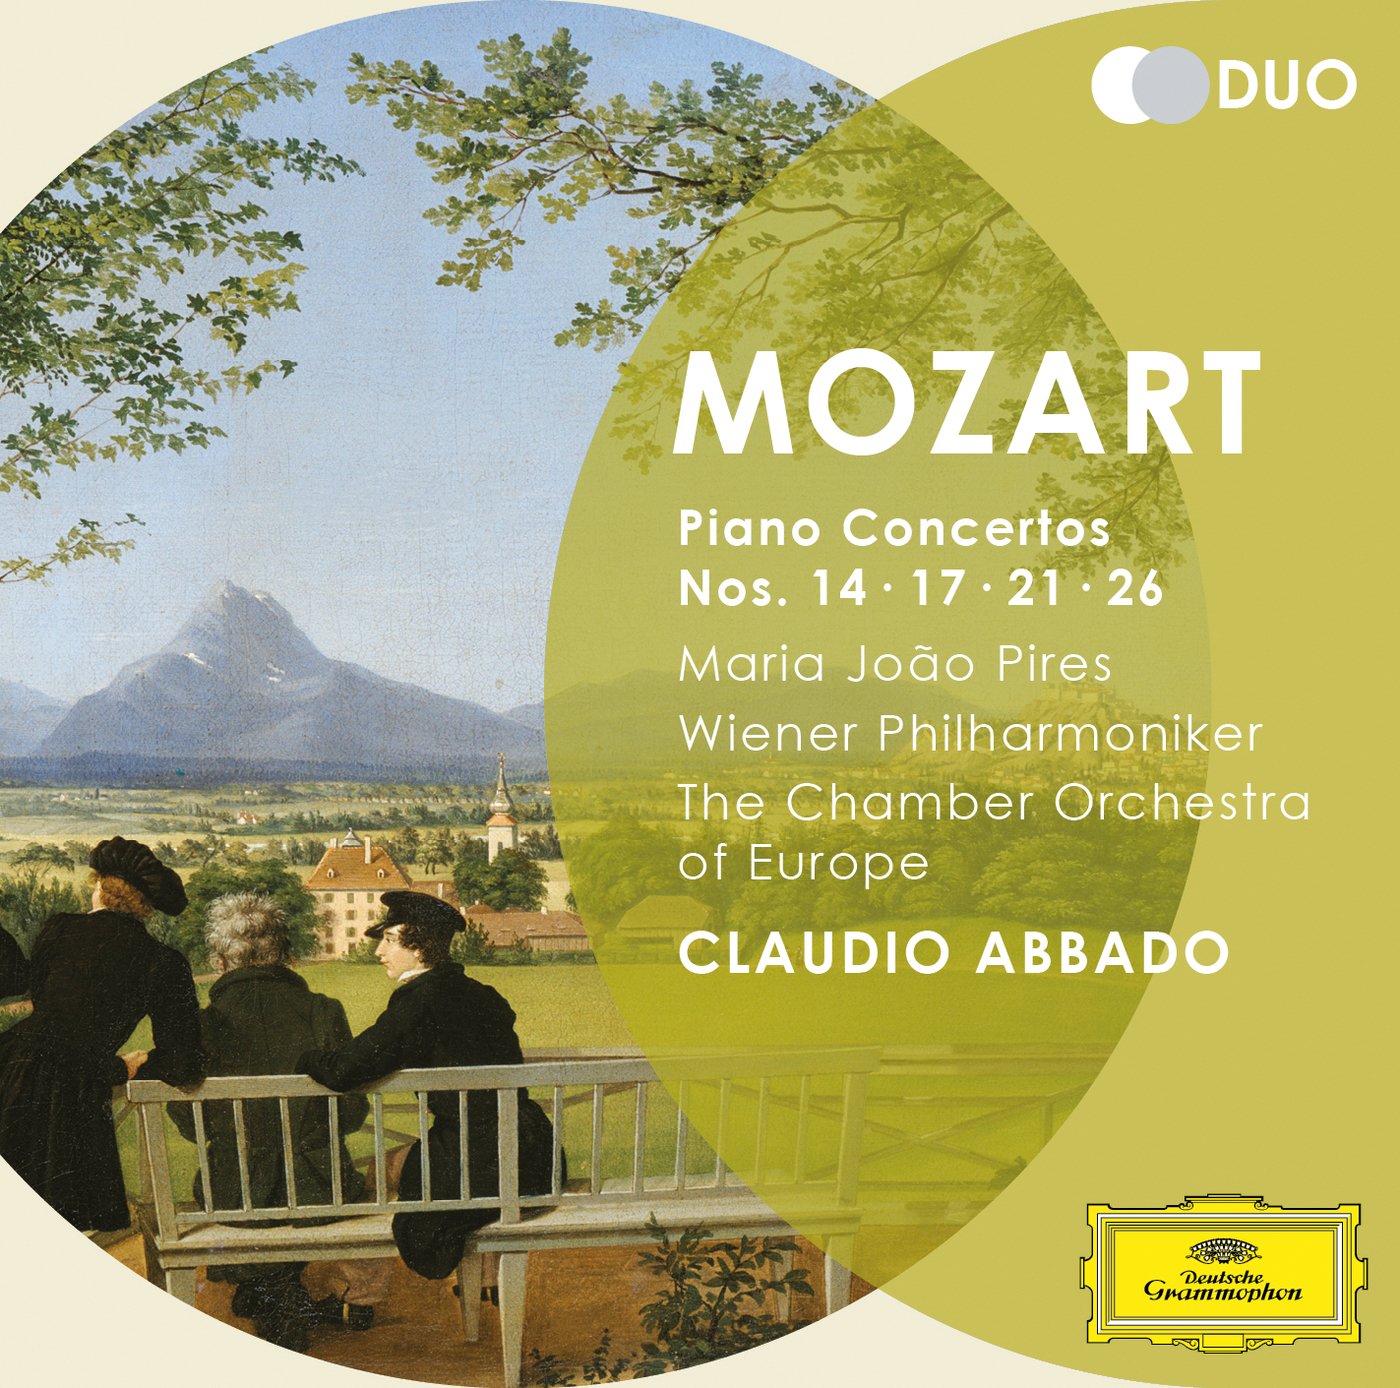 Mozart: Piano Concertos Nos. 14, 17, 21, 26 | Maria-Joao Pires, Wiener Philharmoniker, Chamber Orchestra of Europe, Claudio Abbado